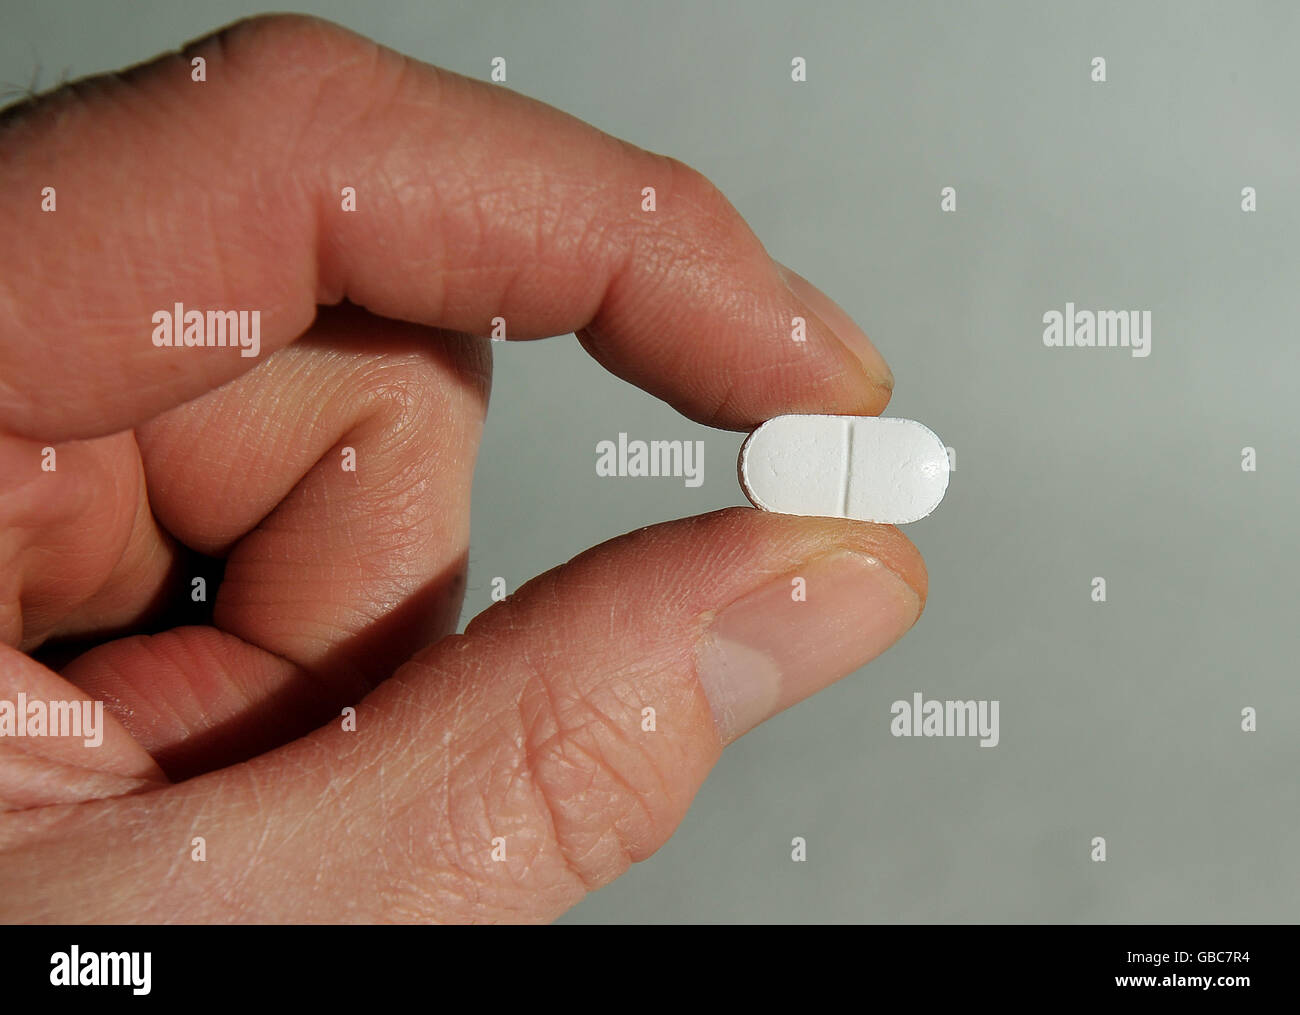 500mg paracetamol tablet immagini e fotografie stock ad alta risoluzione -  Alamy